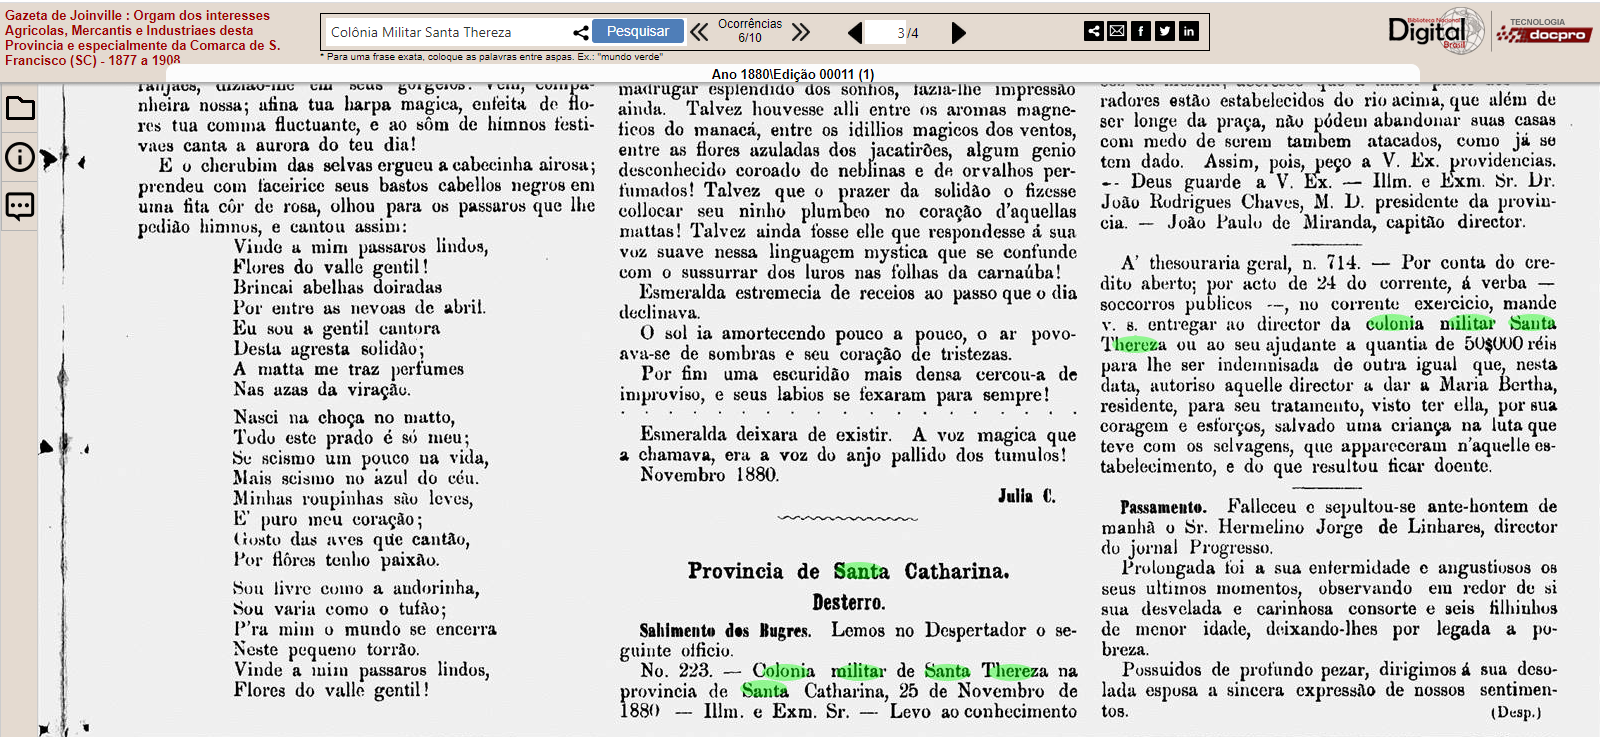 Indenização concedida a Maria Bertha – Gazeta de Joinville 1880 ed. 00011